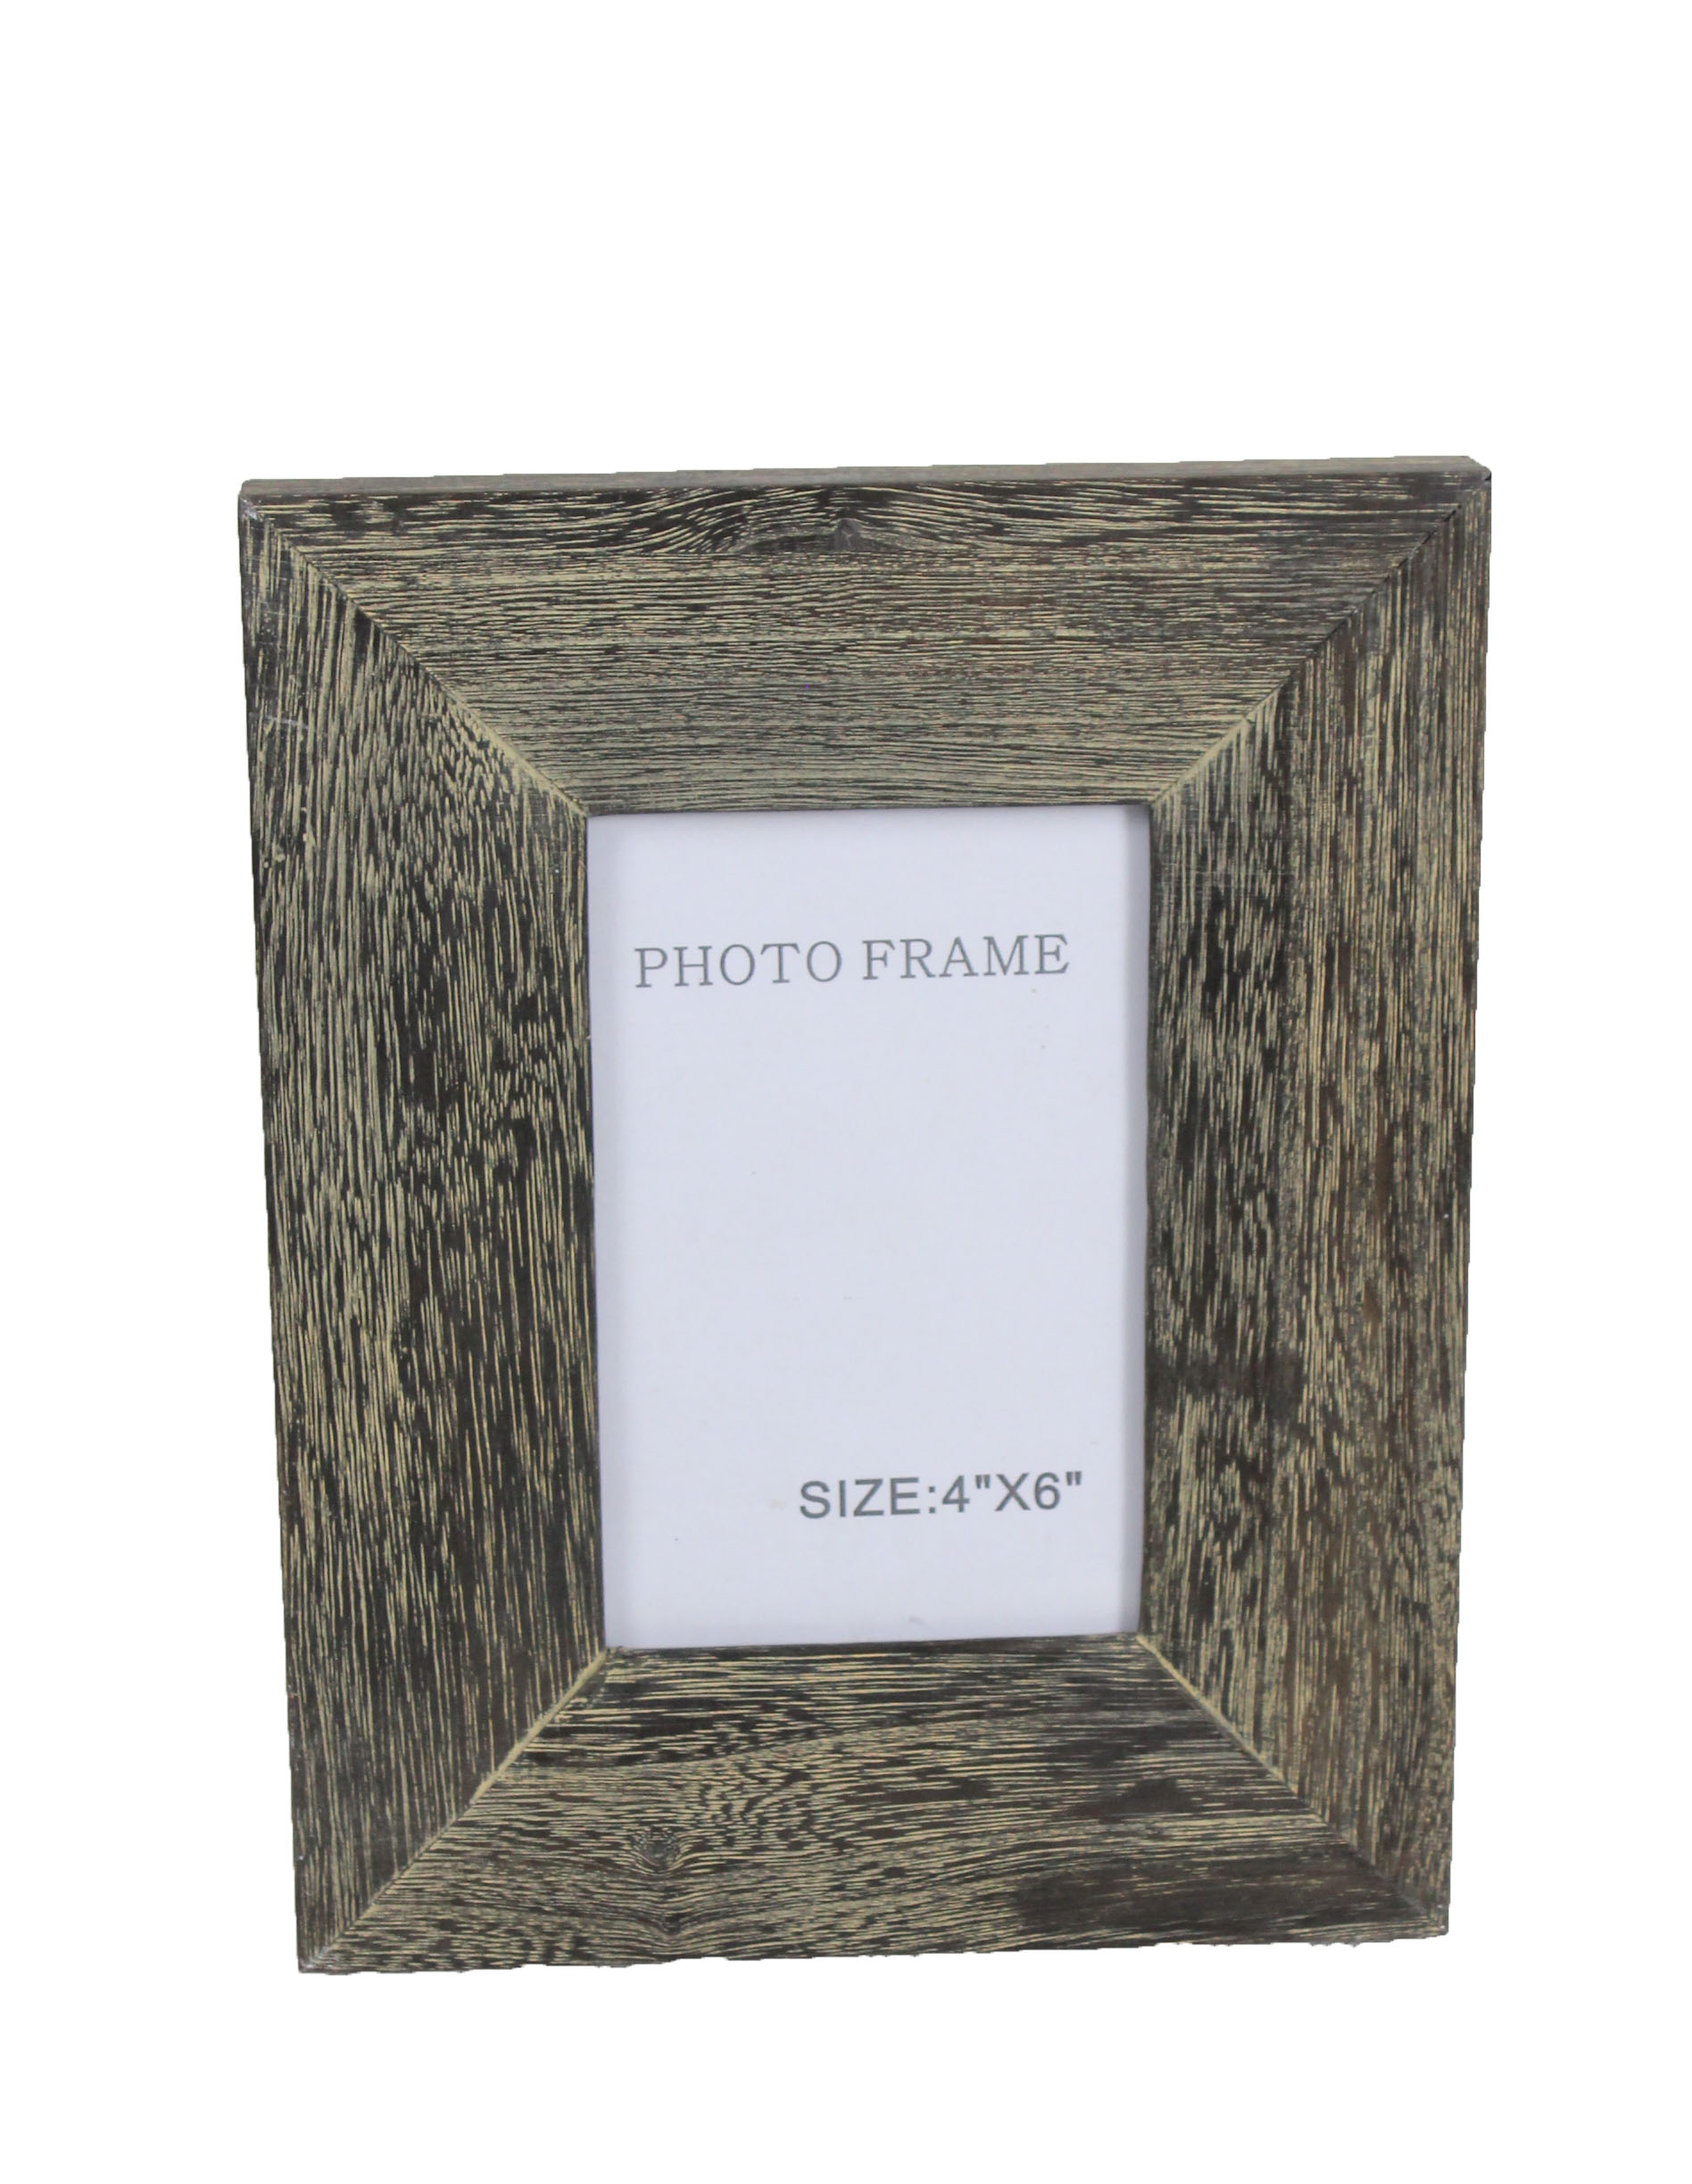 Rustic Frame Mockup,Wooden Frame-5393